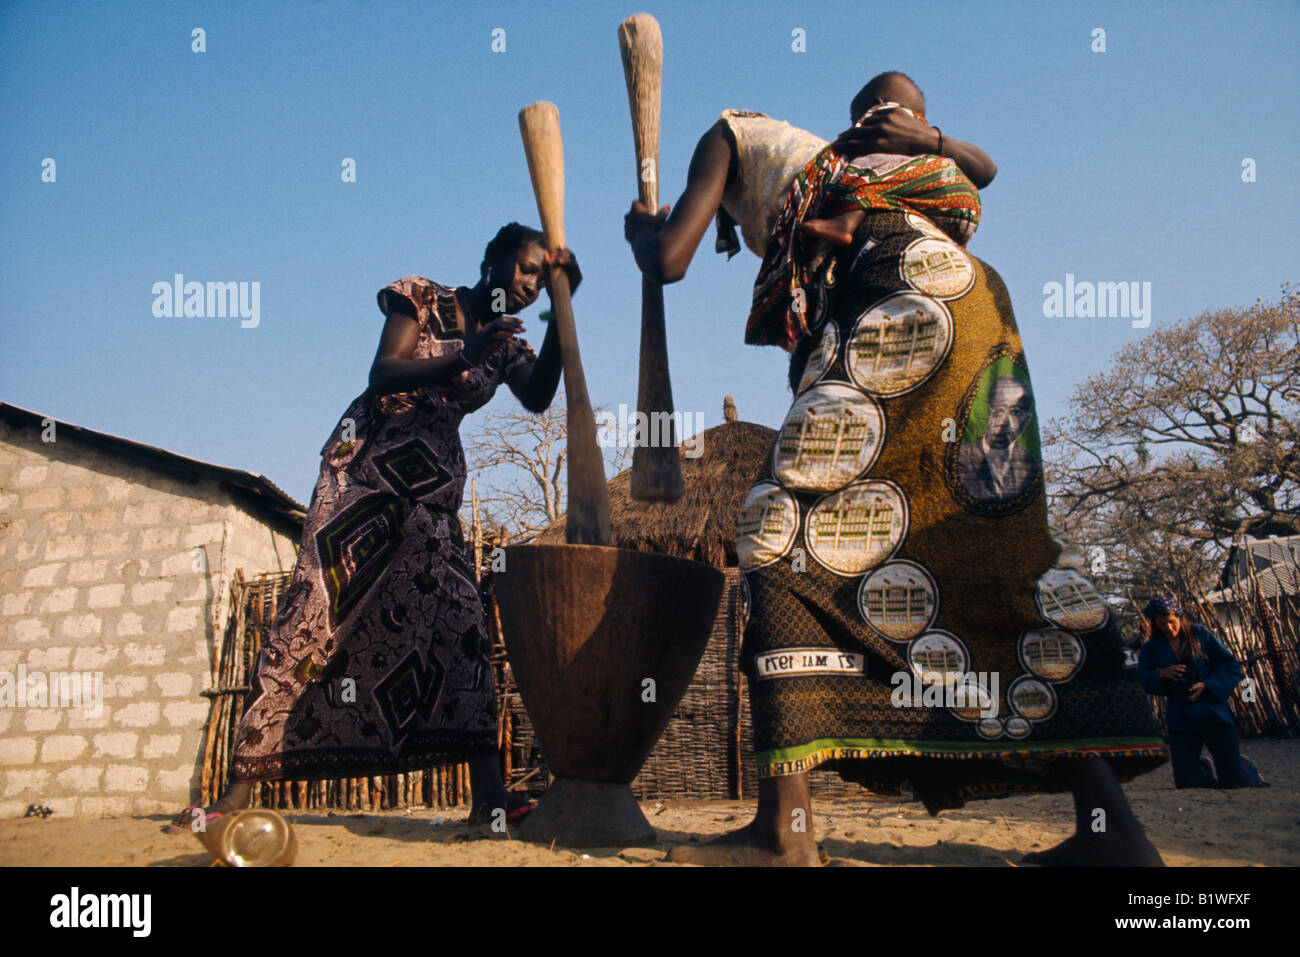 African Wood Sculpture-Two Women pounding Cassava under Tree